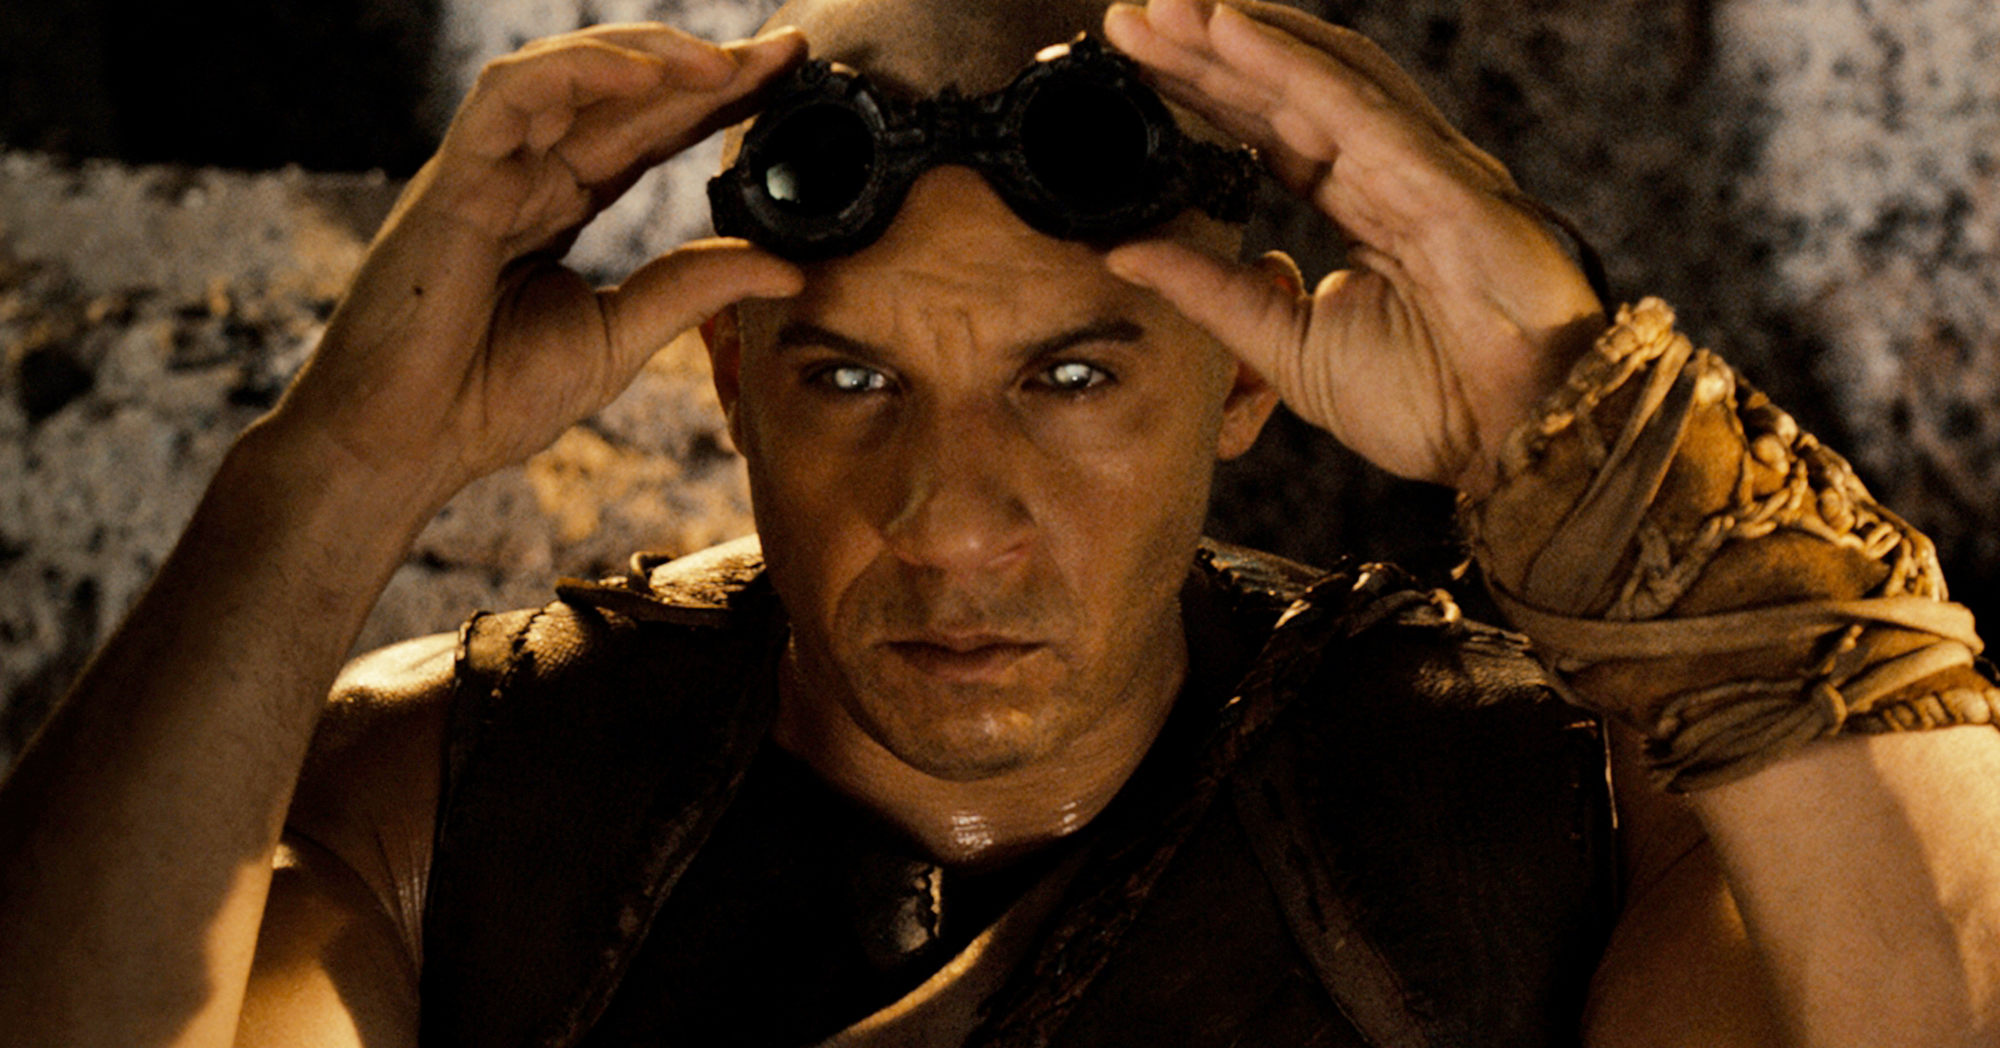 Riddick: in lavorazione un nuovo film con Vin Diesel